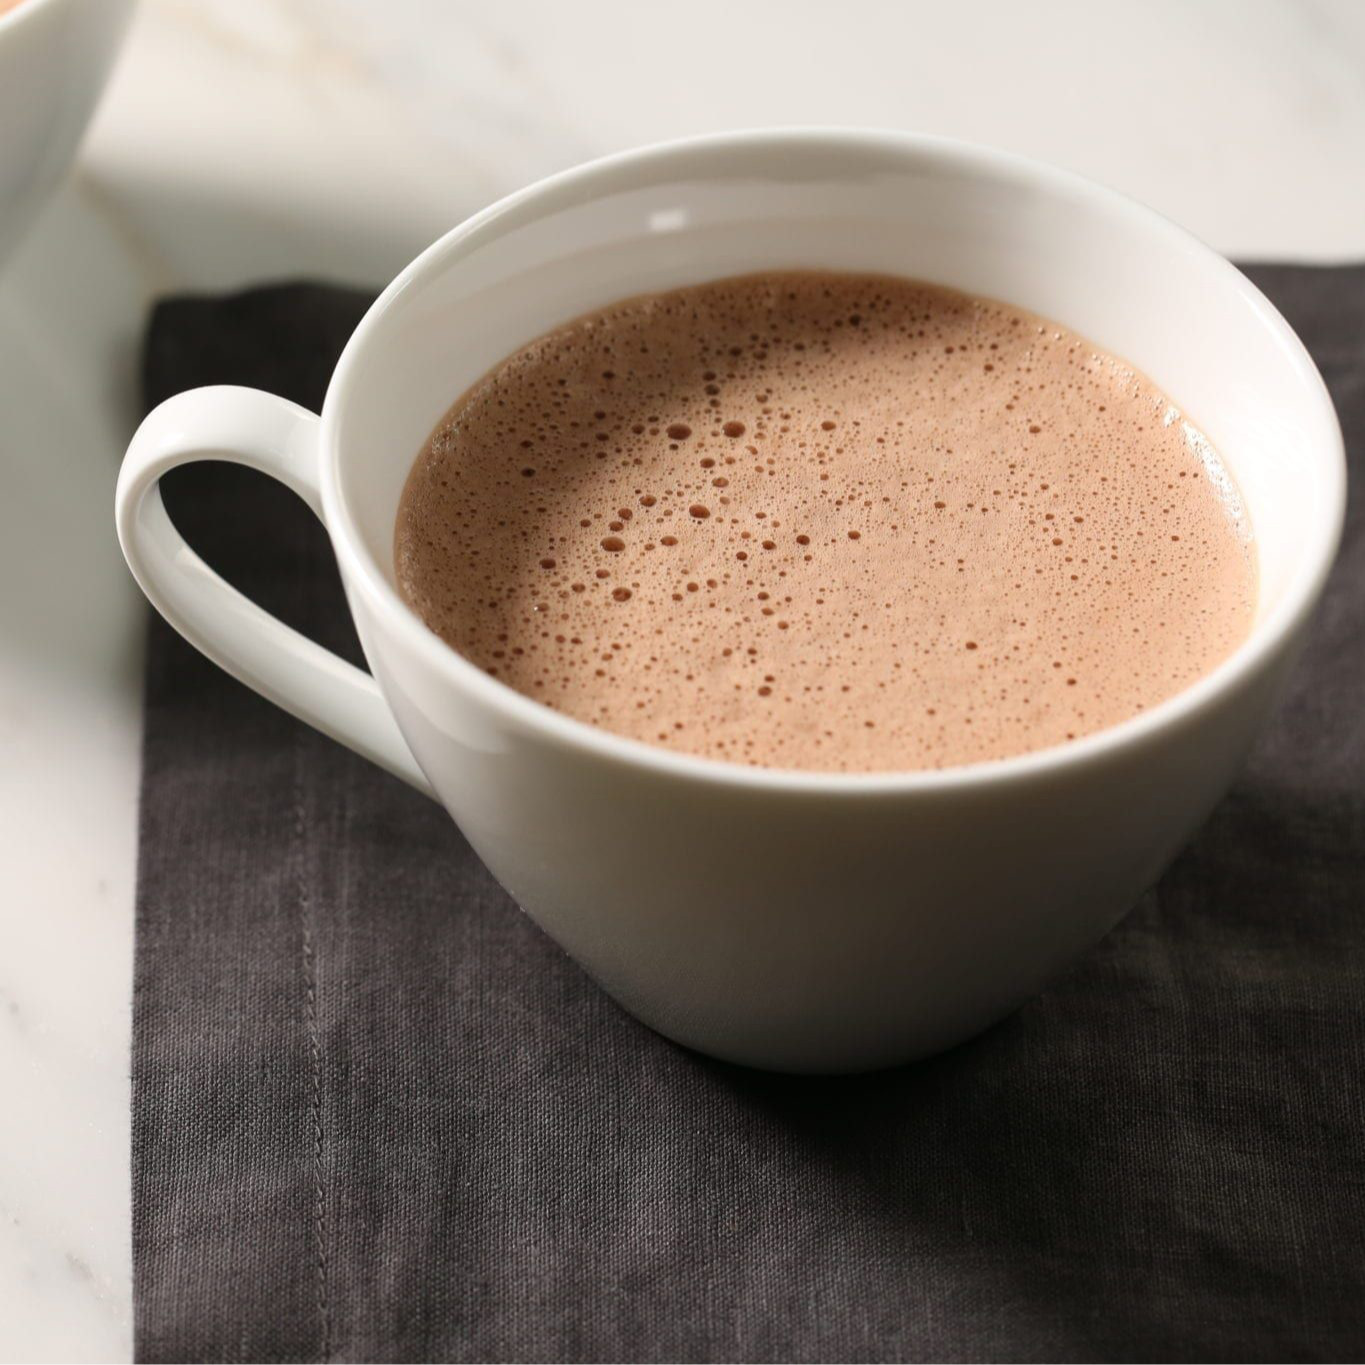 Bột cacao sữa Heyday - Hot Cocoa hộp 12 gói x 20g - Đậm vị chân thật từ cacao nguyên chất